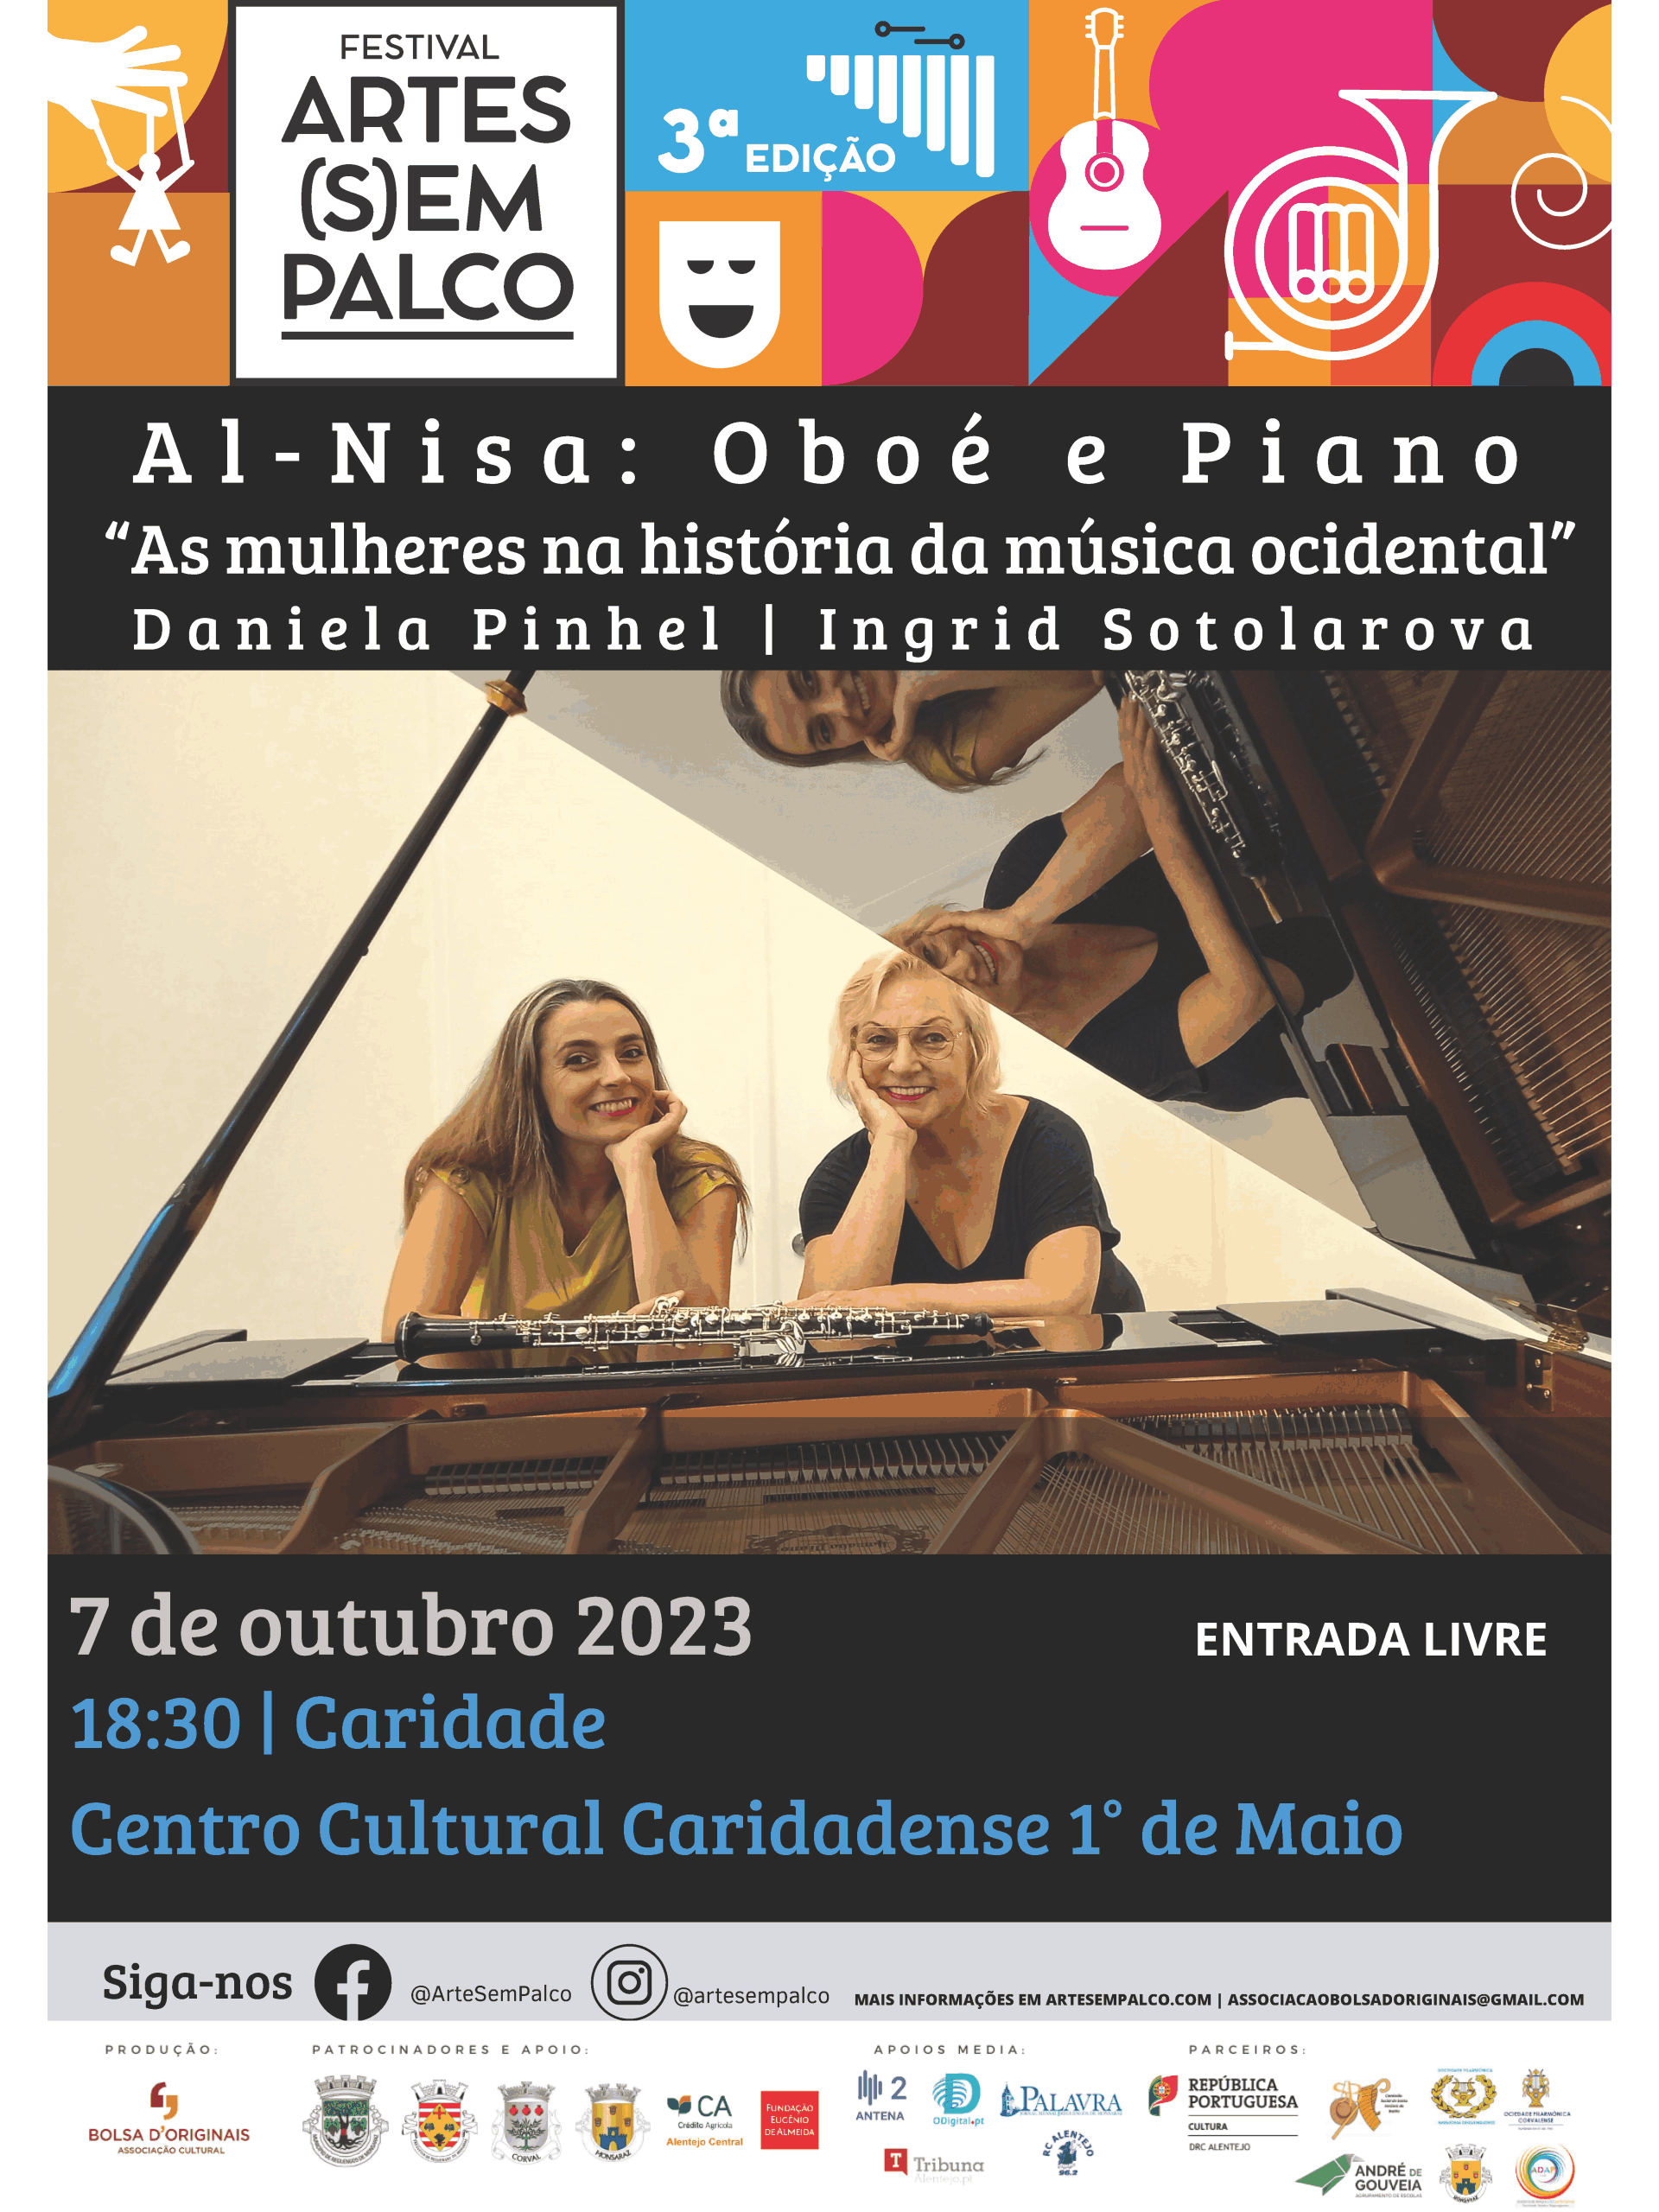 Al-Nisa Ensemble: Oboé e Piano | Festival Arte(s)em Palco